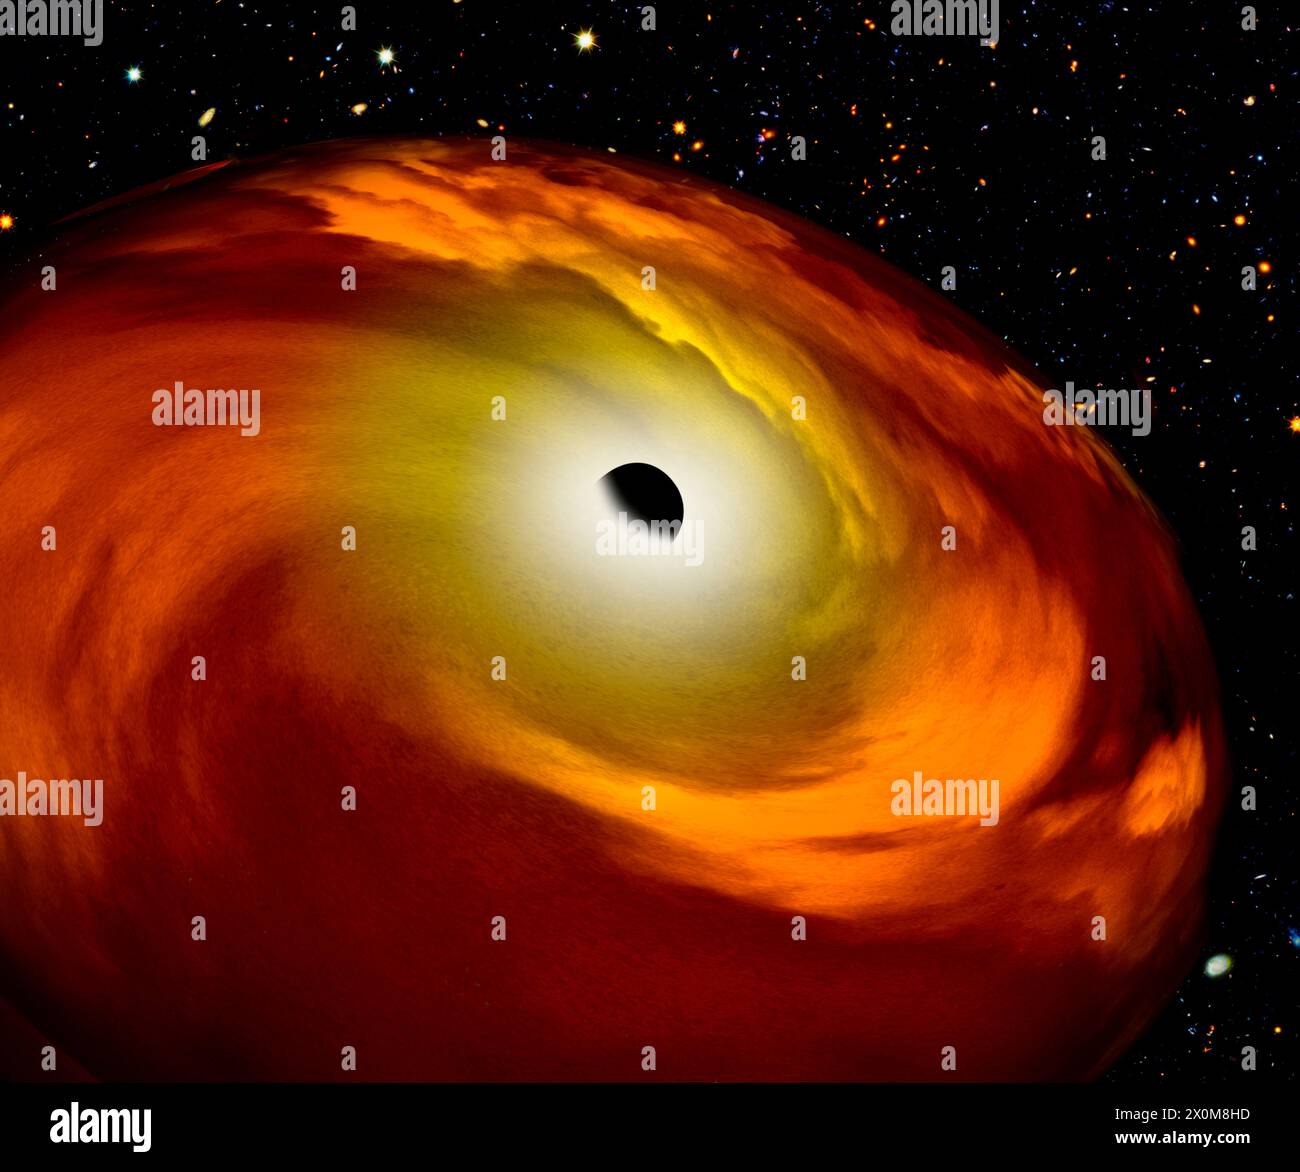 Schwarzes Loch, Abbildung. Ein schwarzes Loch ist ein Objekt, das entsteht, wenn der Kern eines ausreichend massereichen Sterns unter seinem eigenen Gewicht zusammenbricht. Dadurch vergrößert sich das Gravitationsfeld bis zu dem Punkt, an dem über eine als Ereignishorizont bezeichnete Grenze hinaus nichts, nicht einmal Licht, entweichen kann. Stockfoto